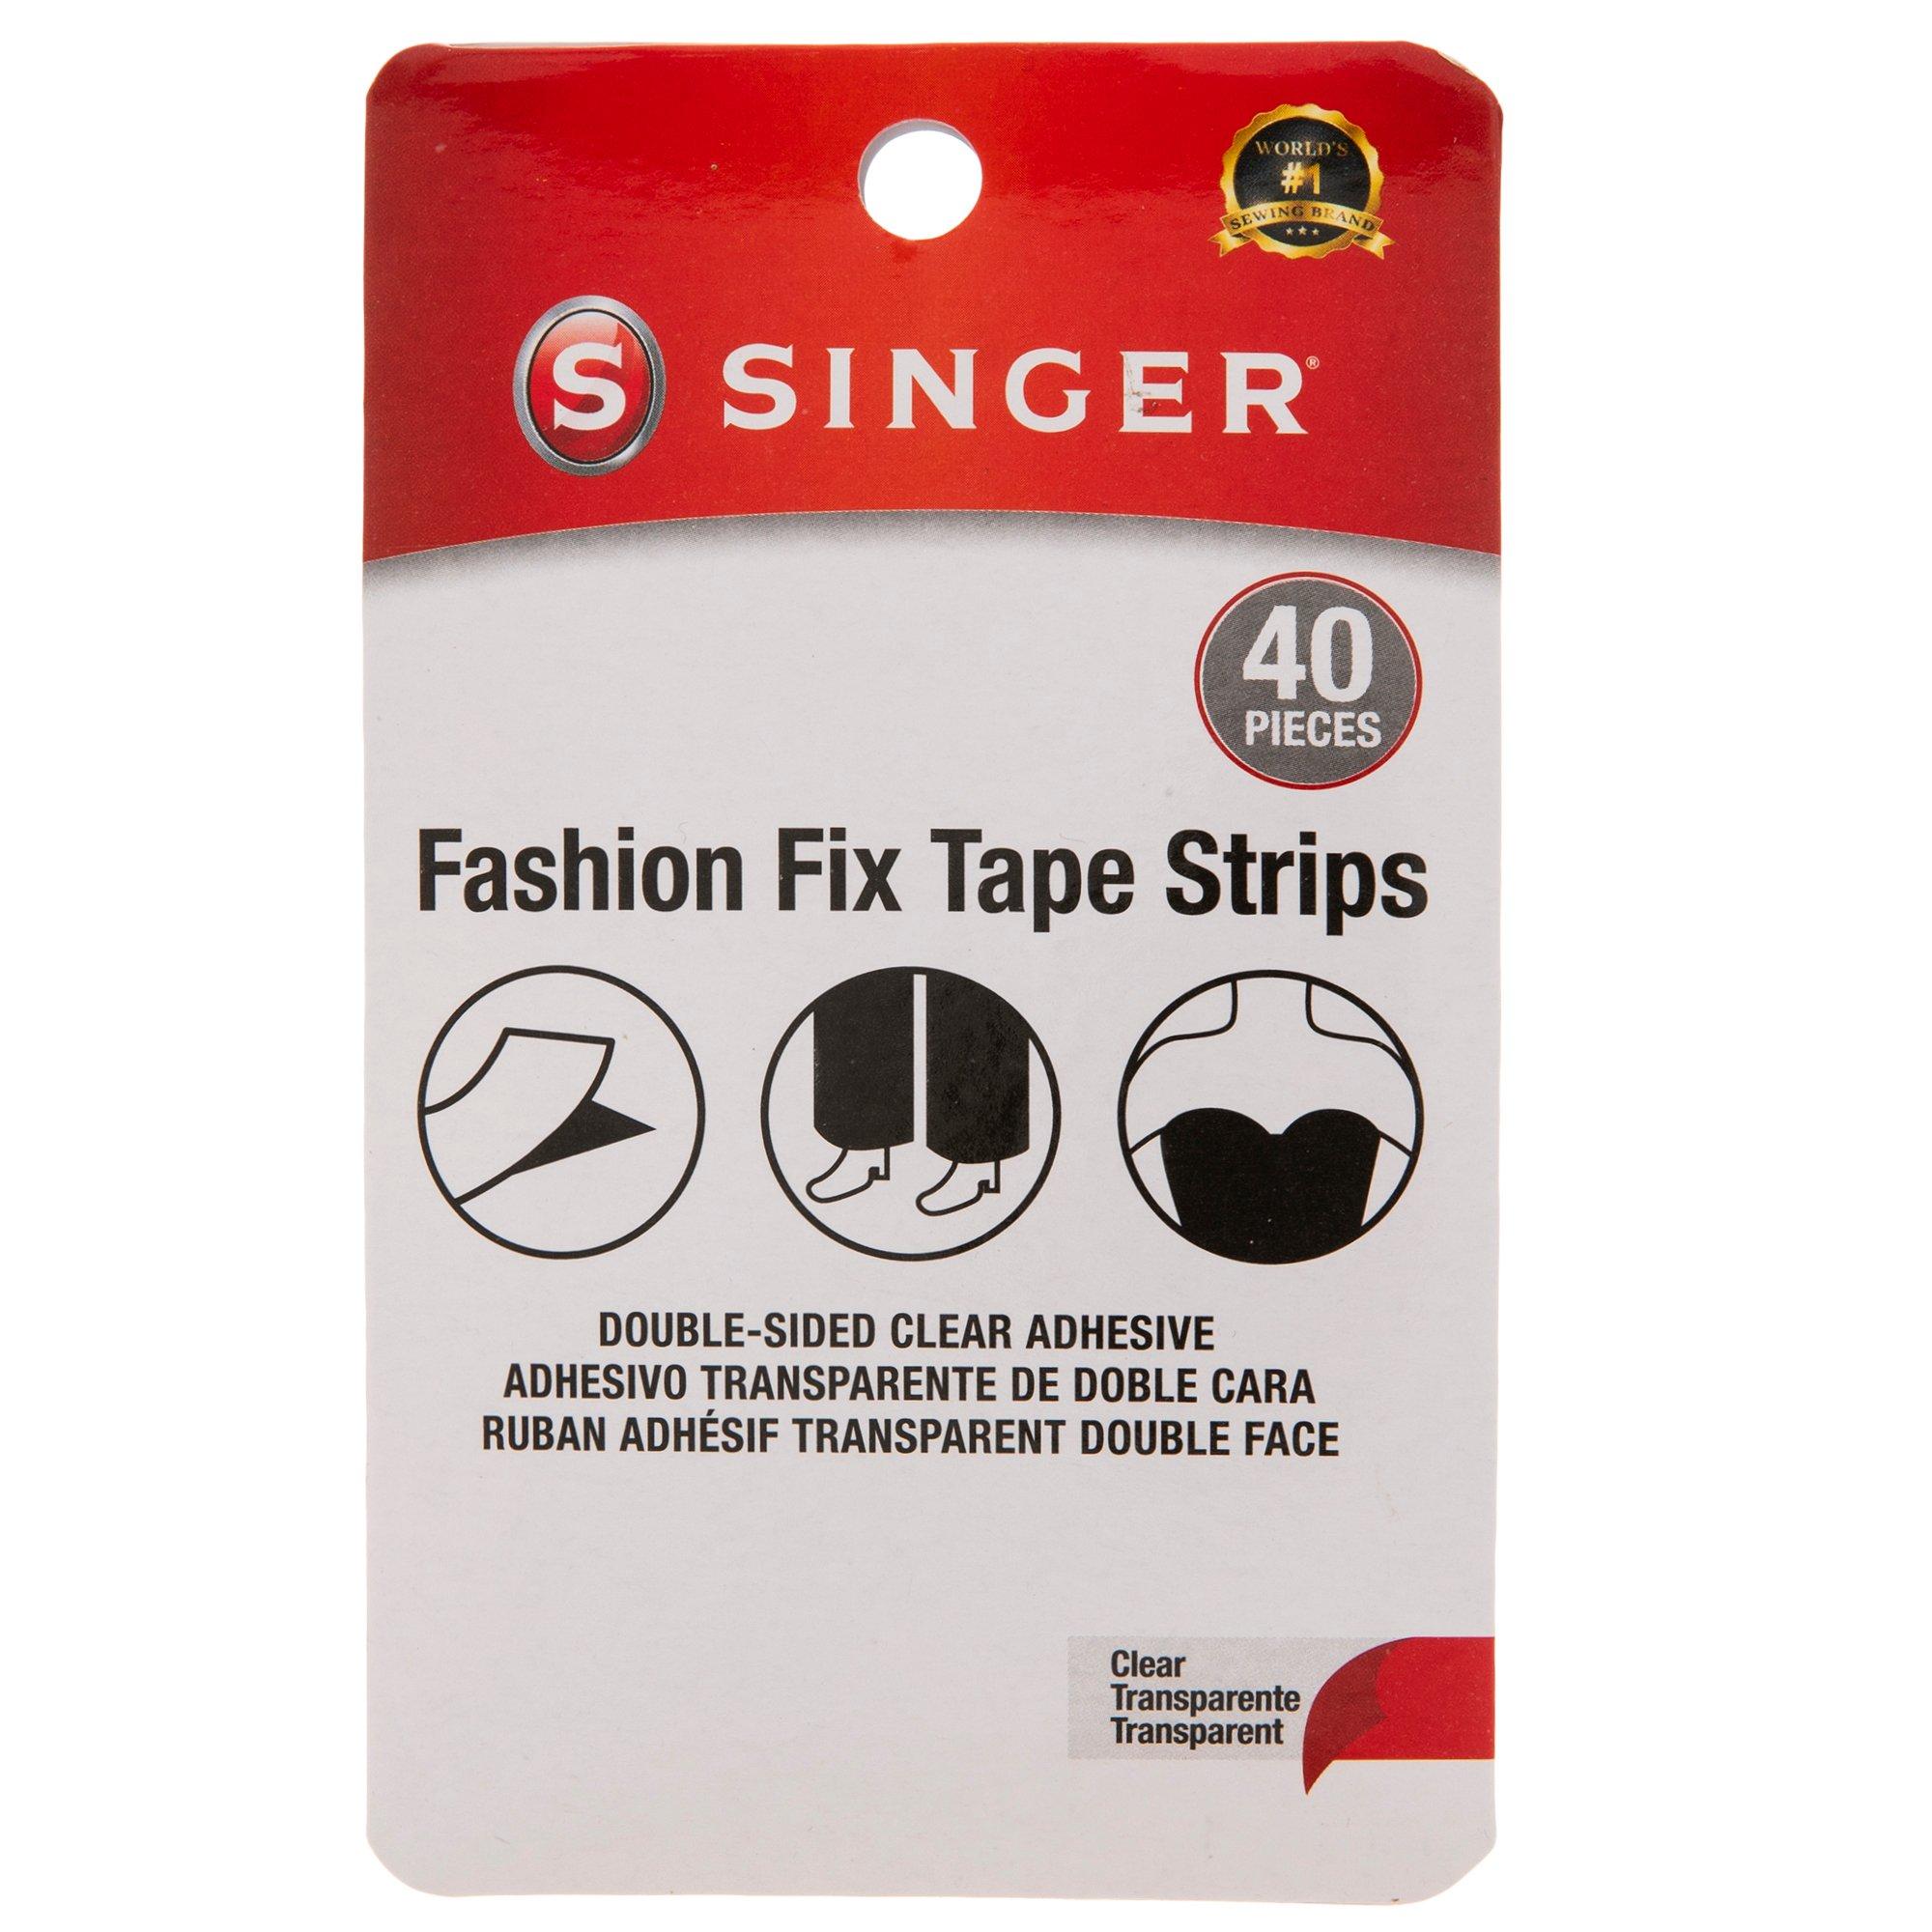 Using this liquid fashion tape to tie this ribbon up my leg